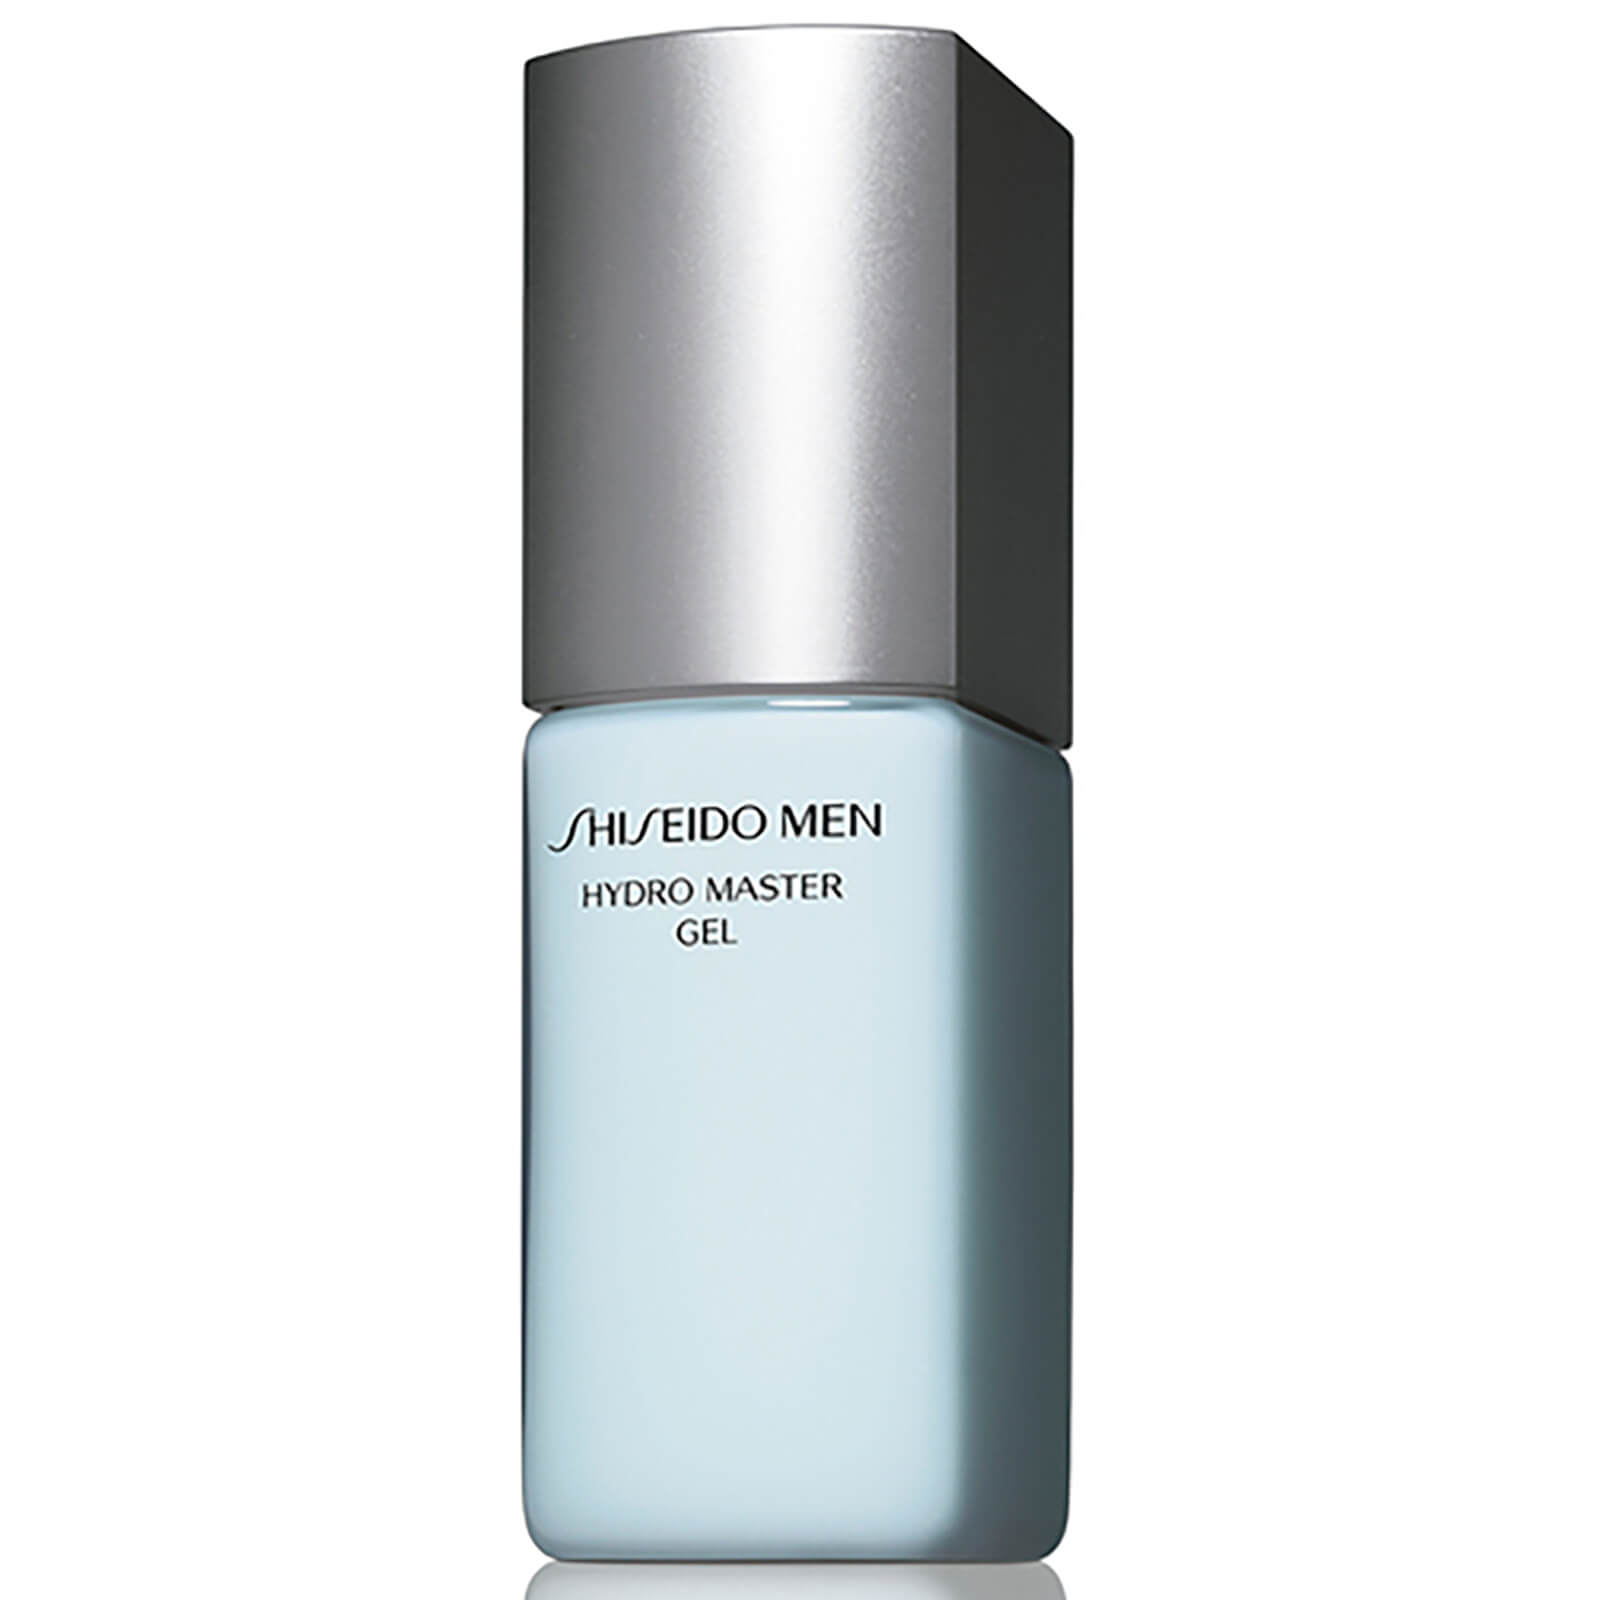 Hydro Master Gel de Shiseido Men (75 ml)